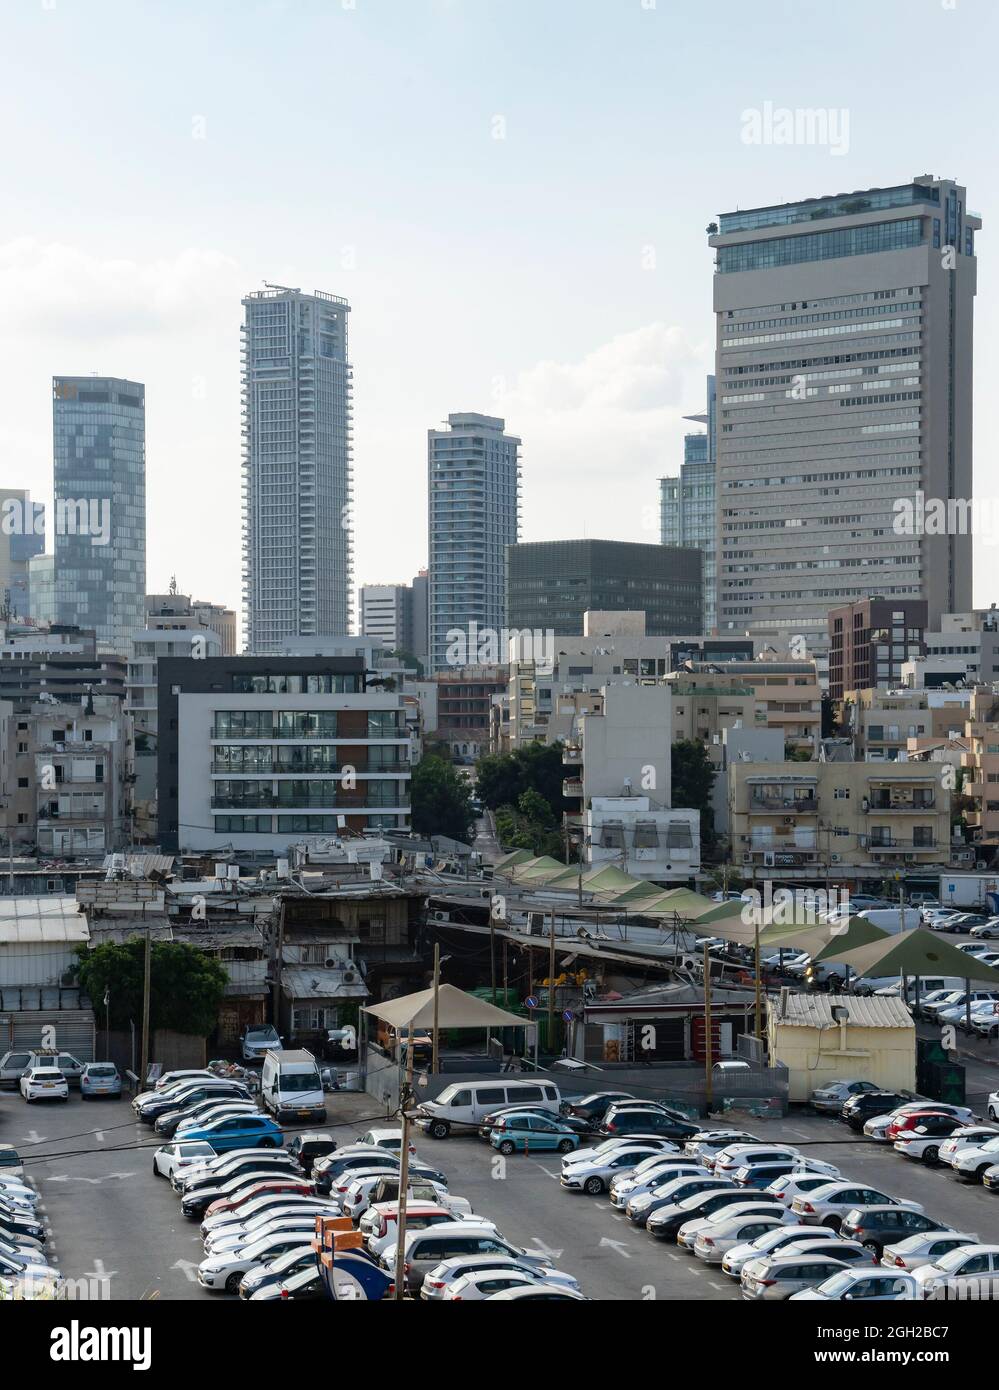 Un paesaggio urbano del sud di Tel Aviv, Israele, tra cui alti riser oltre a vecchi edifici più piccoli, un mercato e un parcheggio. Foto Stock